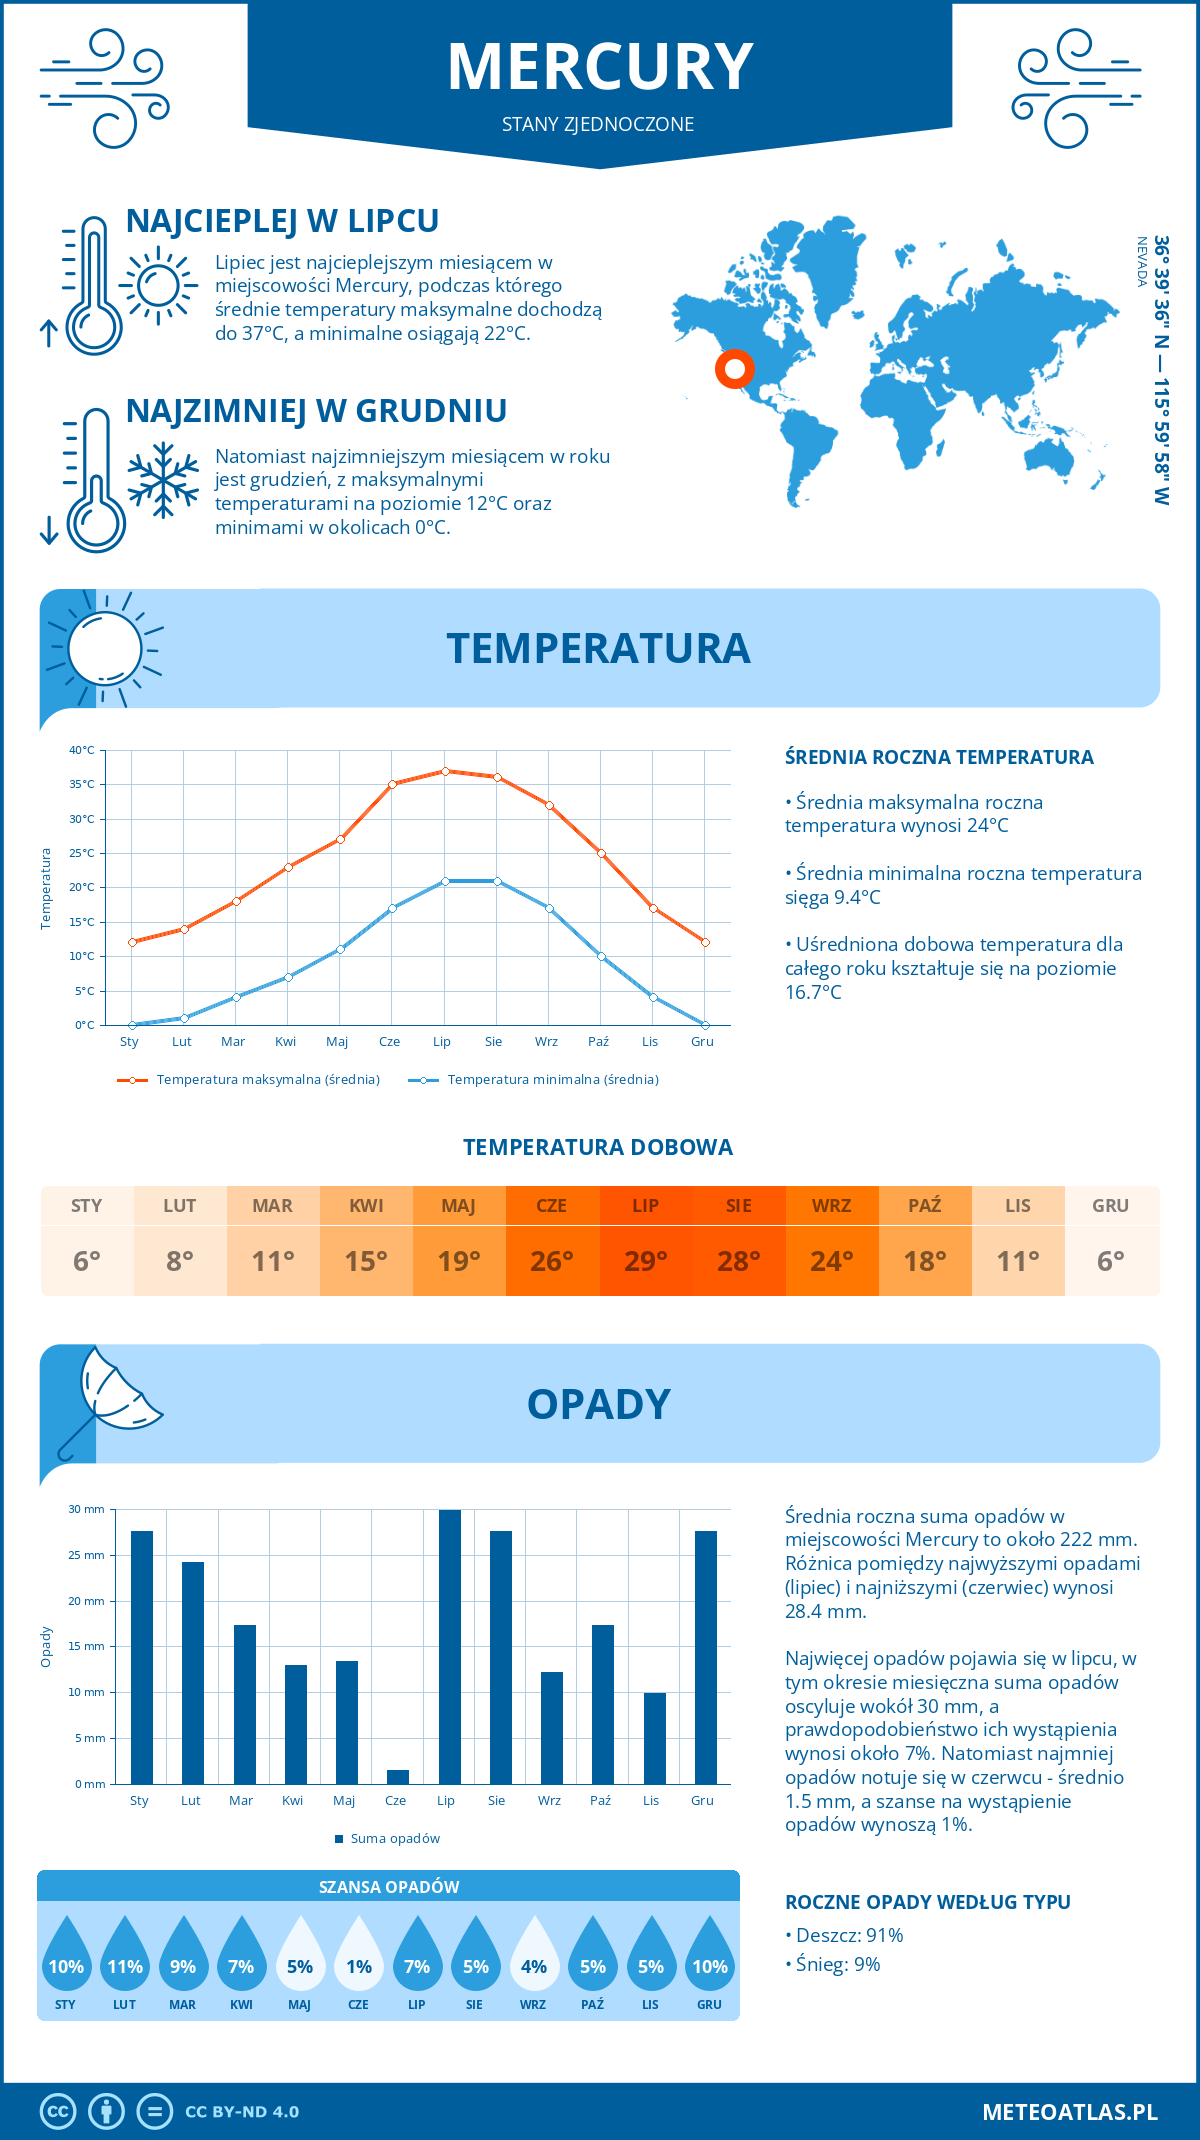 Pogoda Mercury (Stany Zjednoczone). Temperatura oraz opady.